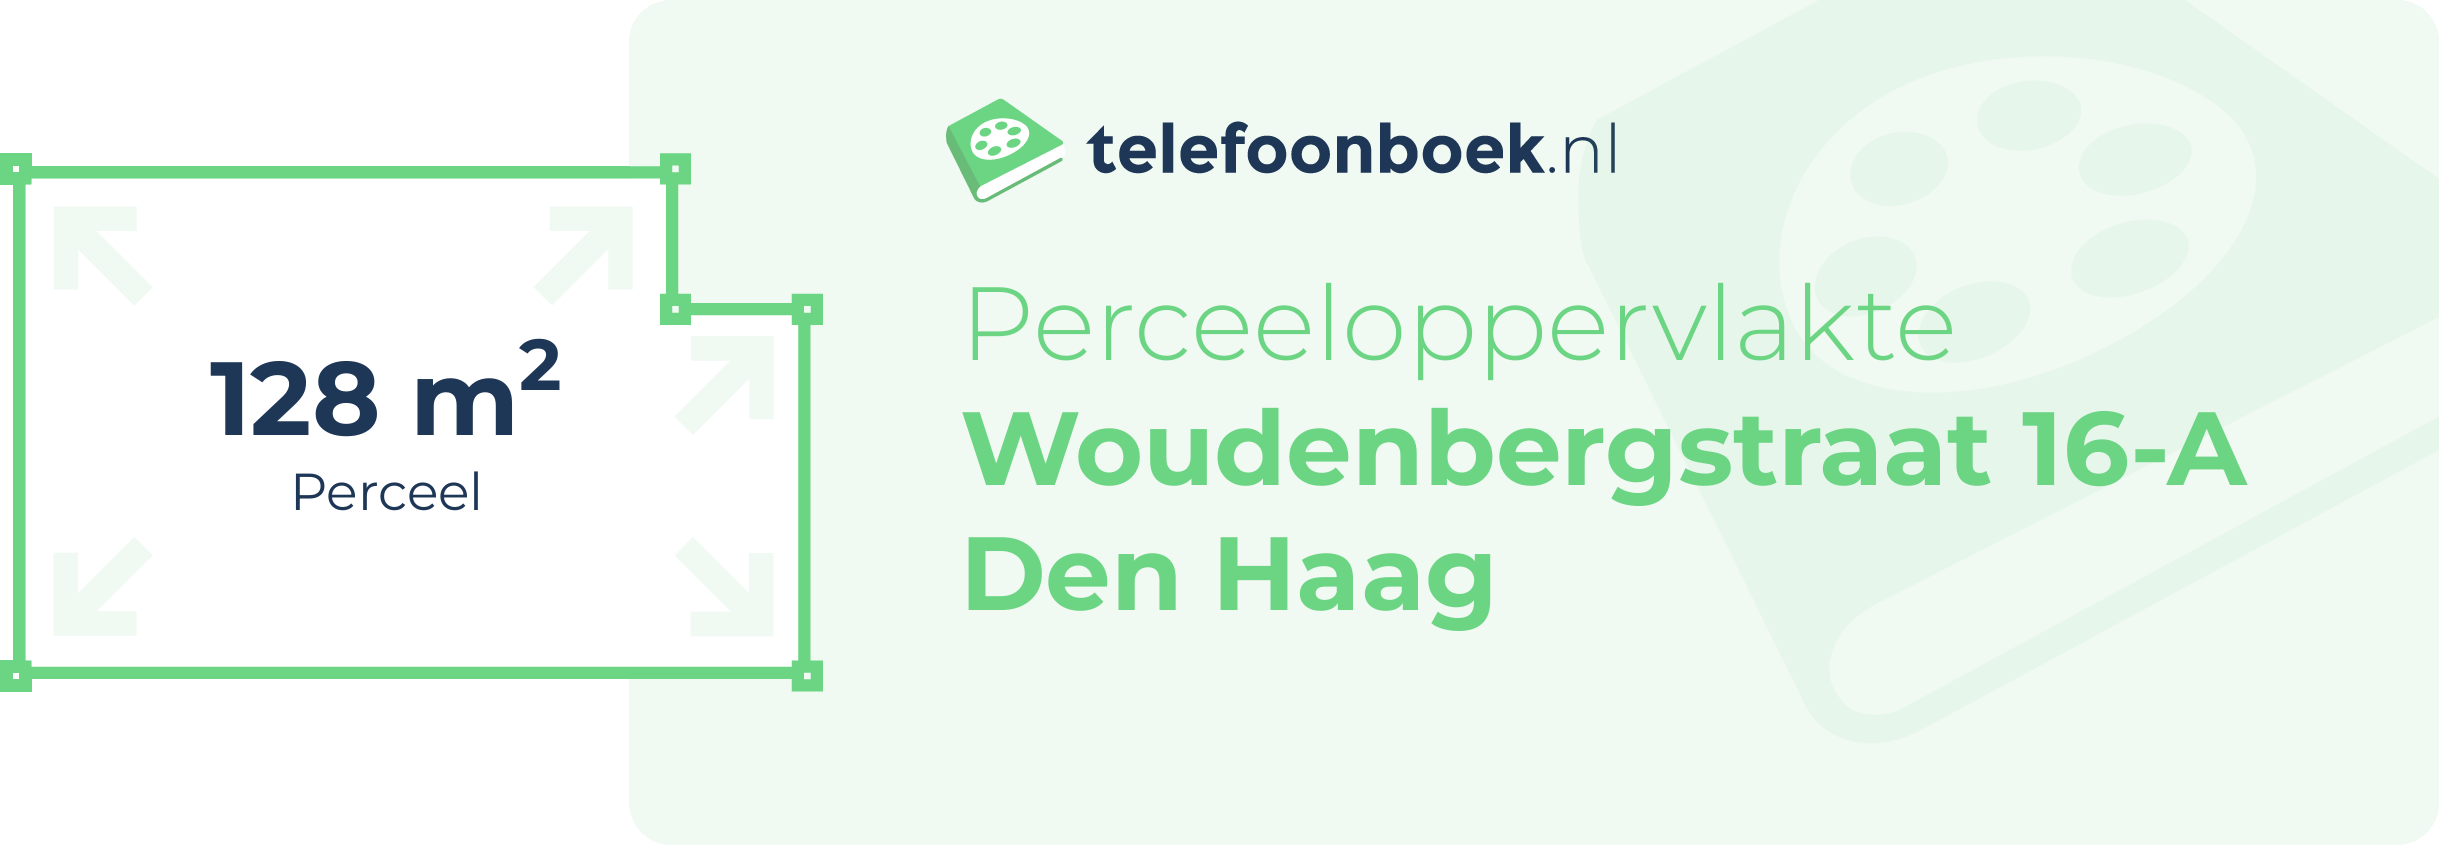 Perceeloppervlakte Woudenbergstraat 16-A Den Haag